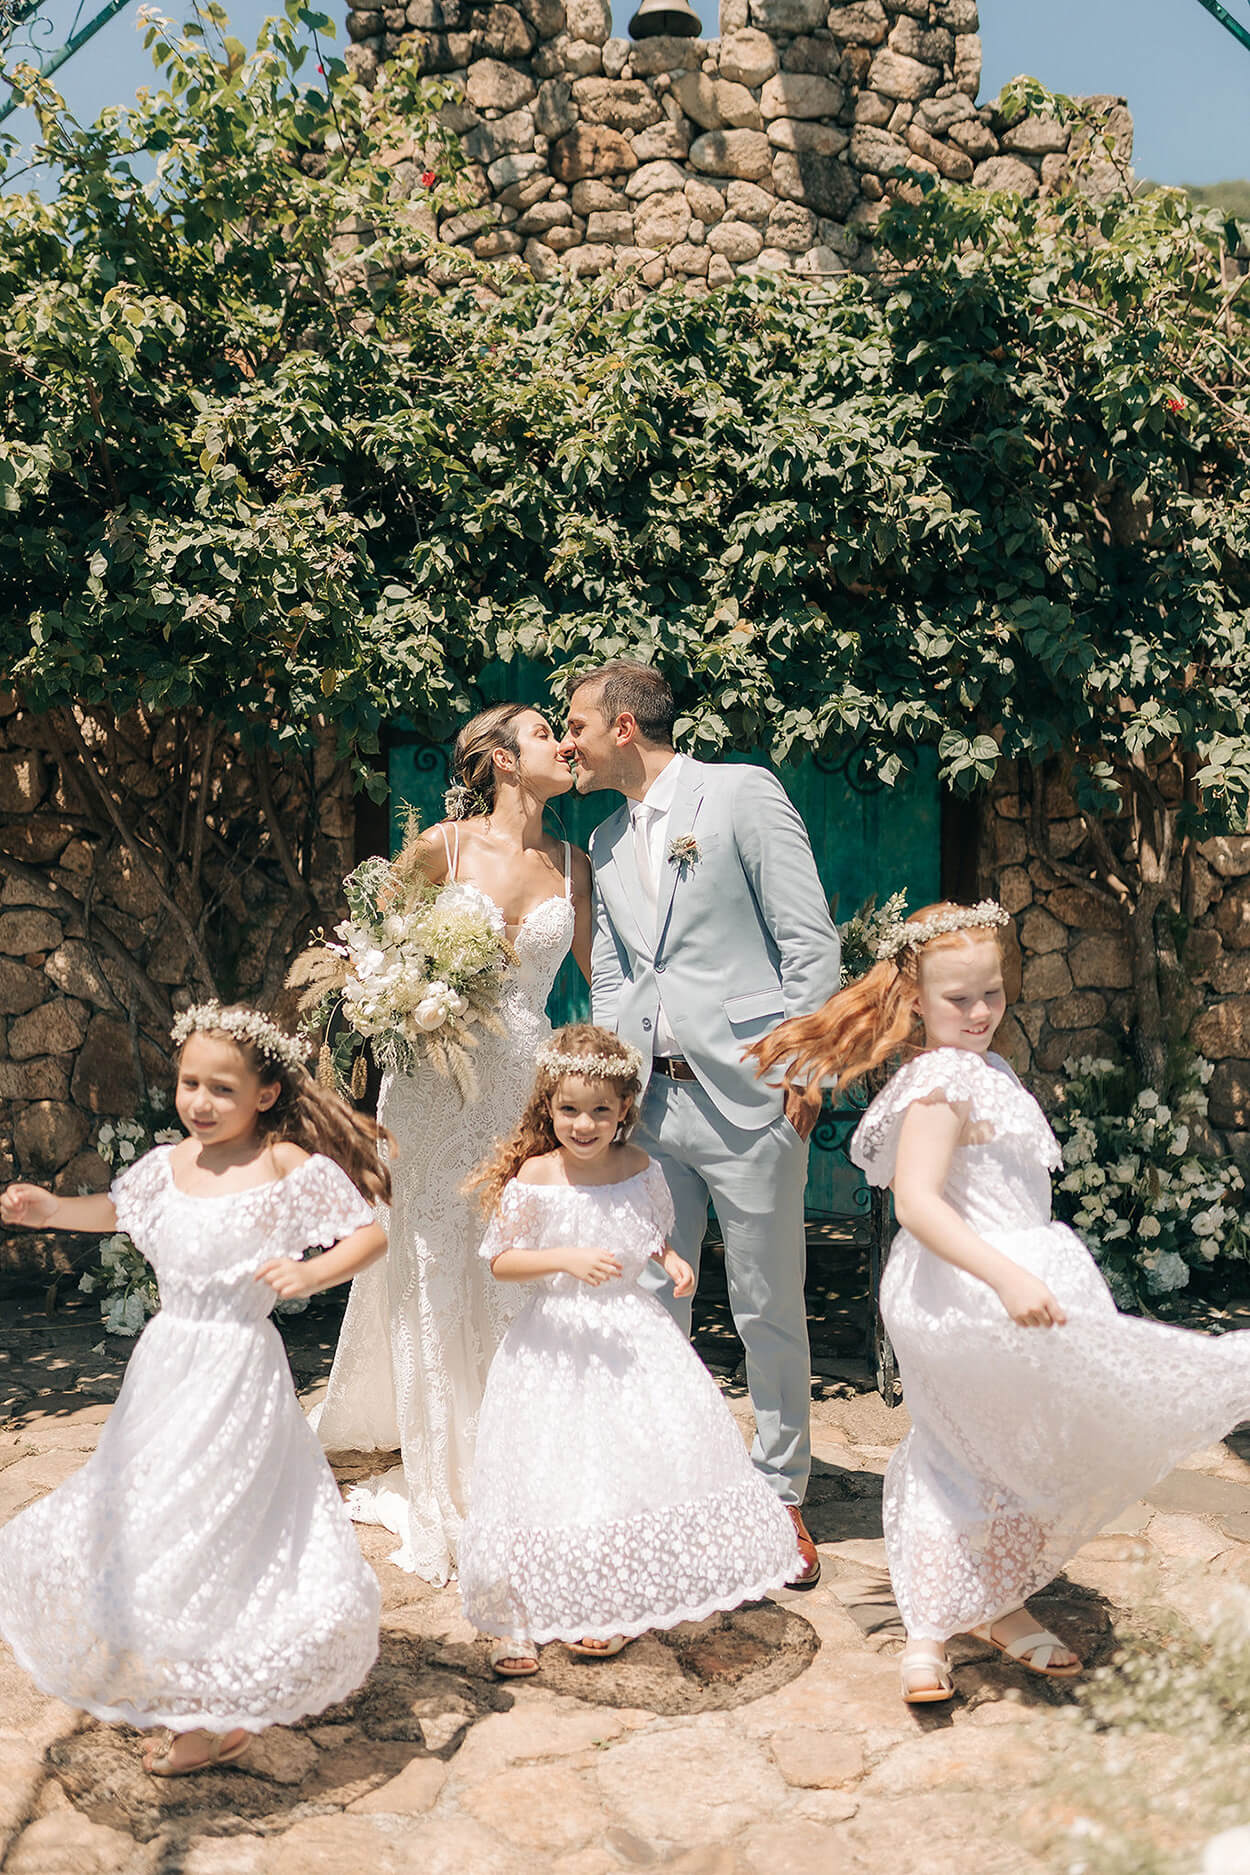 Casamento no campo pede vestidos ajustados e noivos coloridos - Harper's  Bazaar » Moda, beleza e estilo de vida em um só site